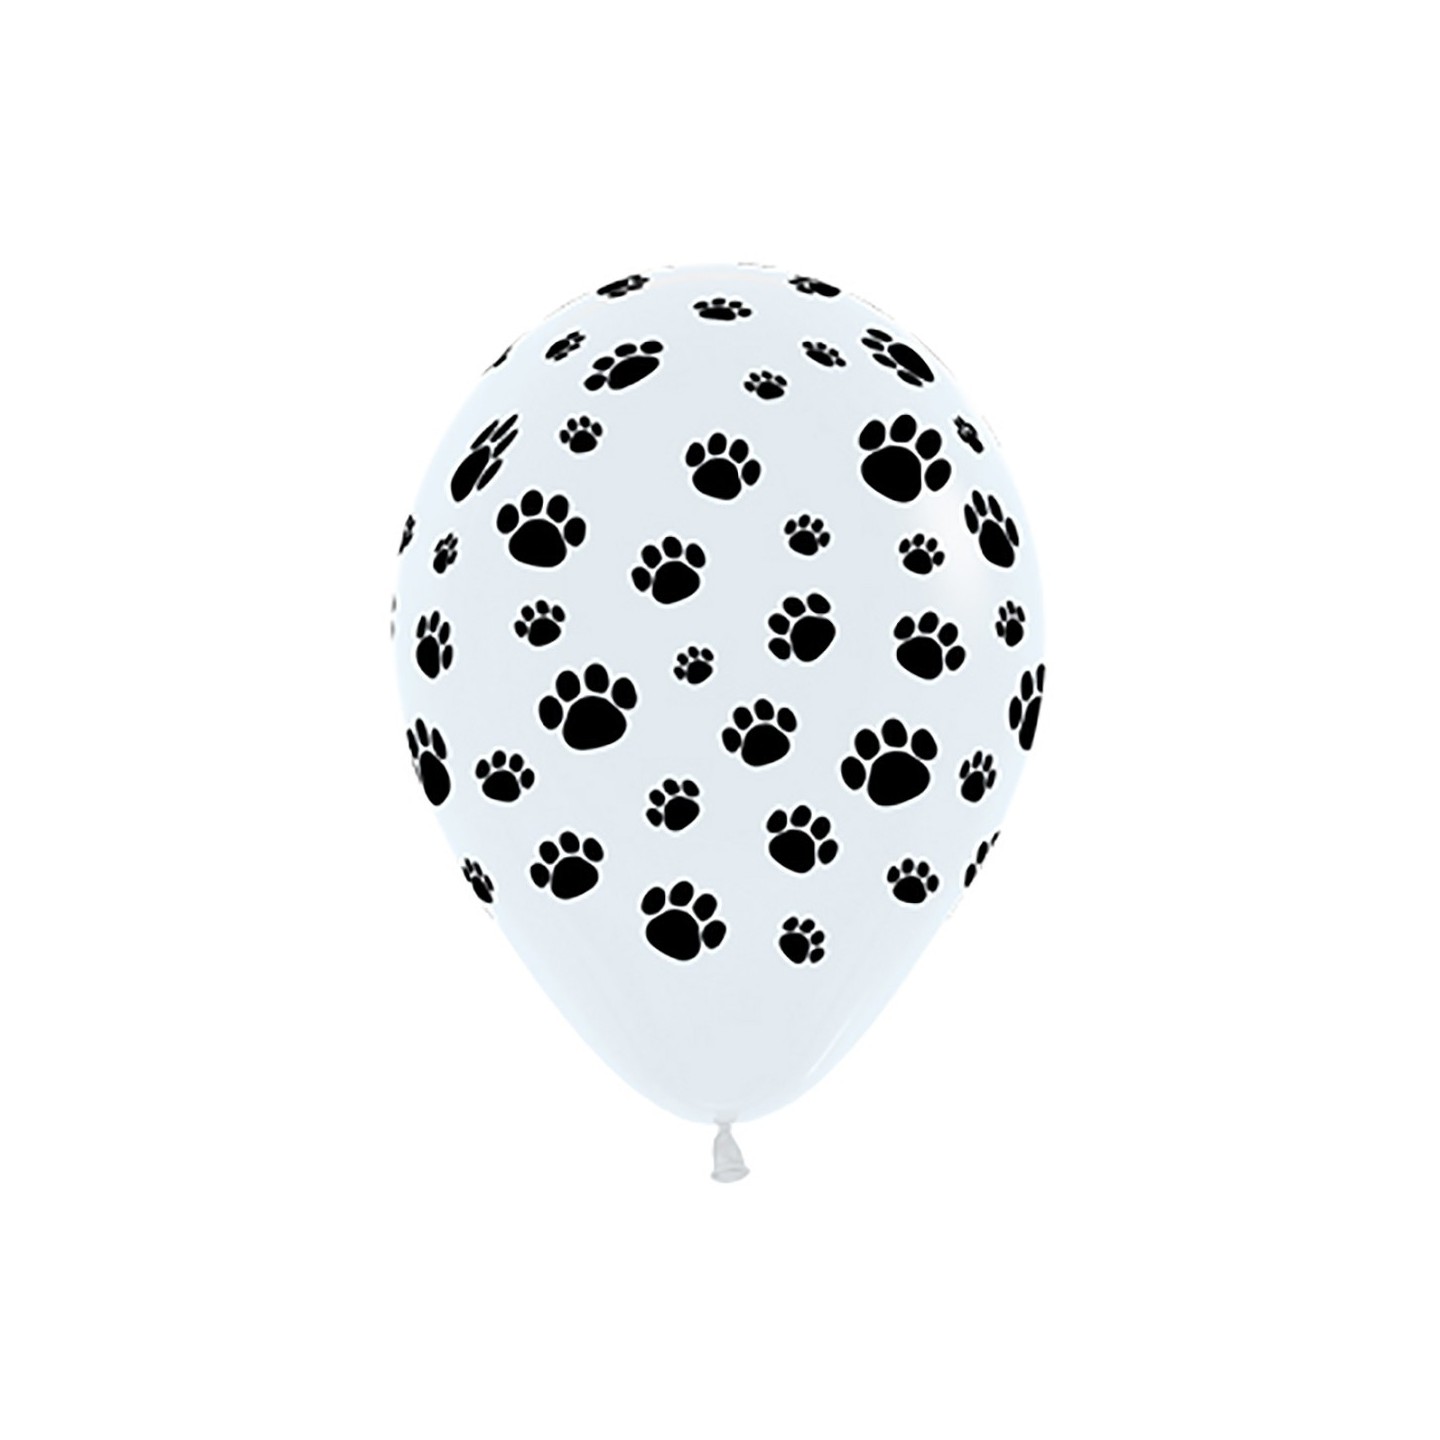 ballonnen met honden pootjes katten